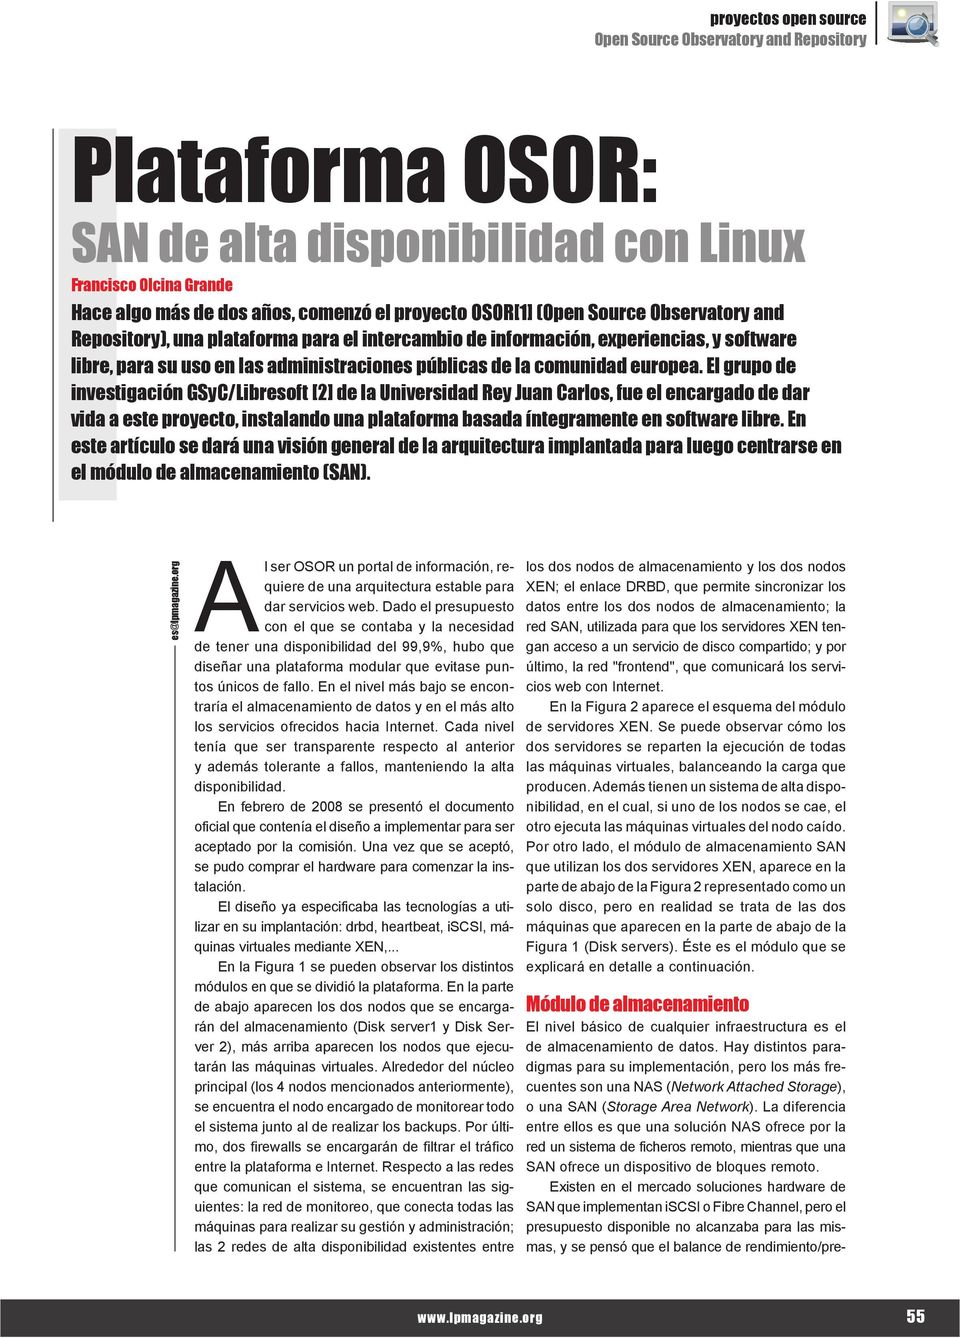 El grupo de investigación GSyC/Libresoft [2] de la Universidad Rey Juan Carlos, fue el encargado de dar vida a este proyecto, instalando una plataforma basada íntegramente en software libre.